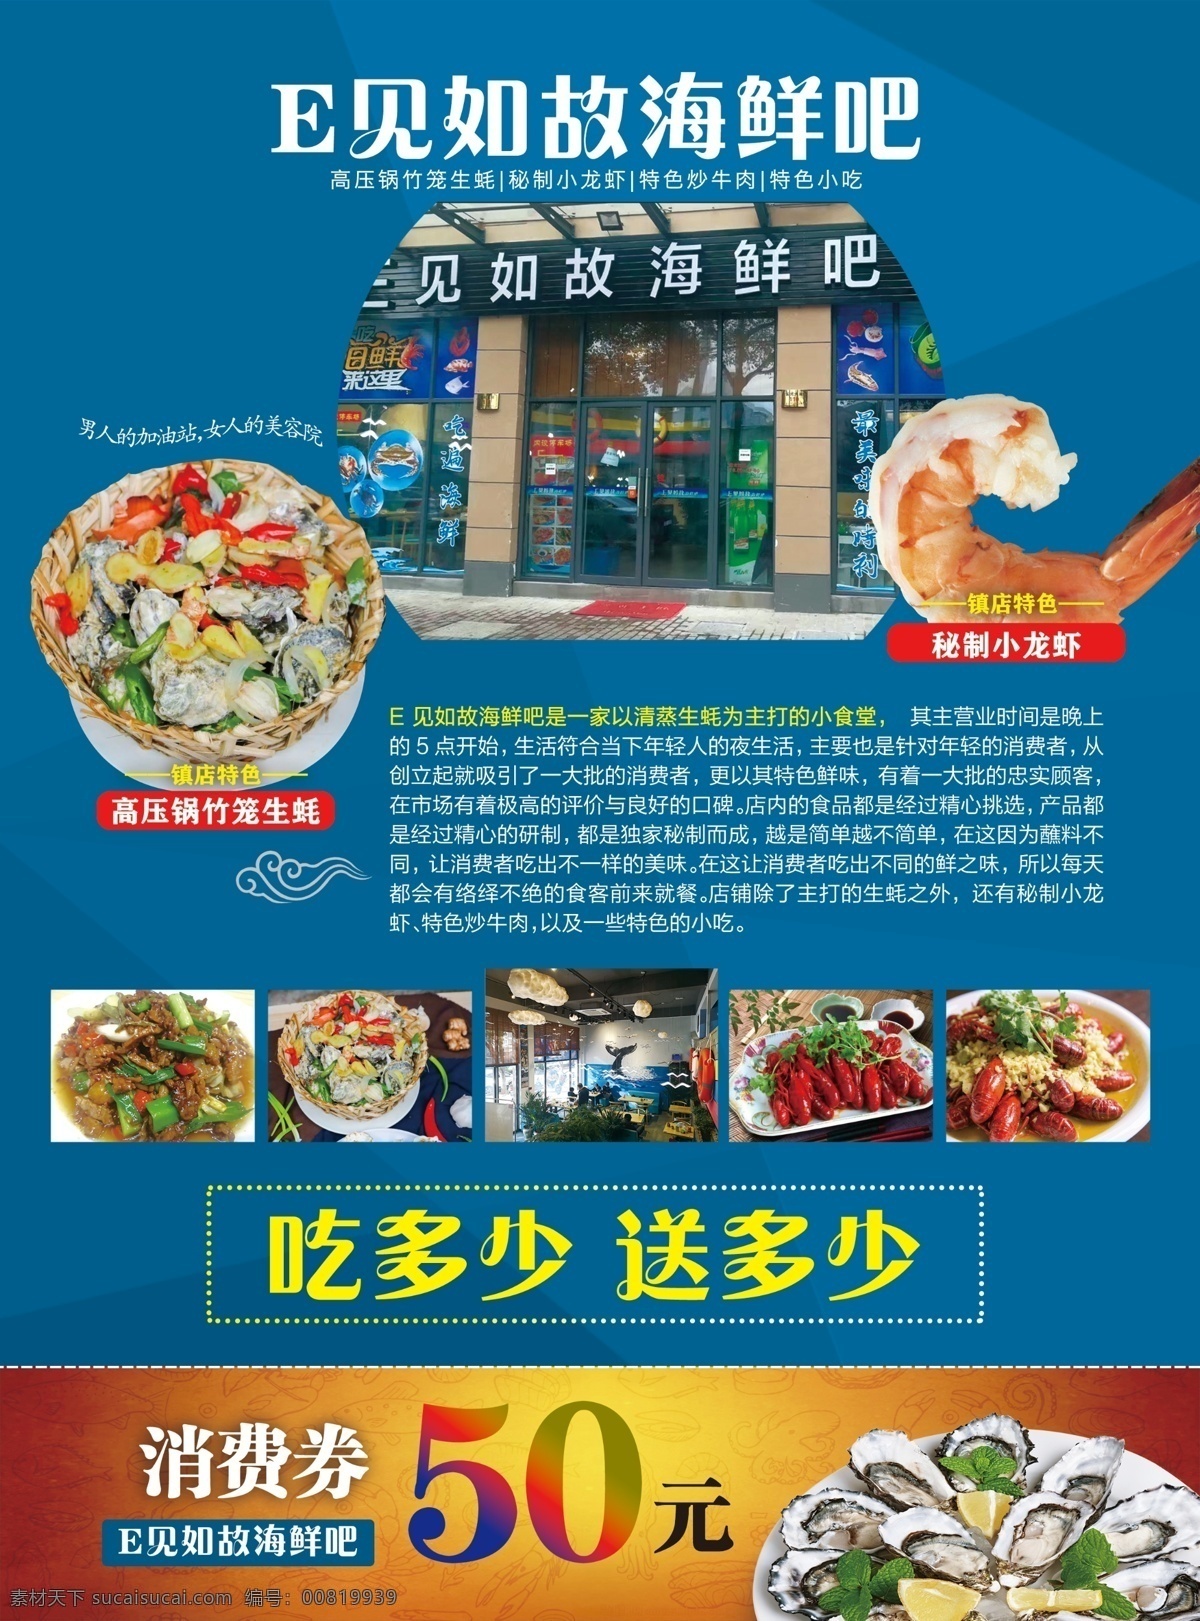 海鲜吧 生蚝 小龙虾 饭店彩页 炒田鸡 dm宣传单